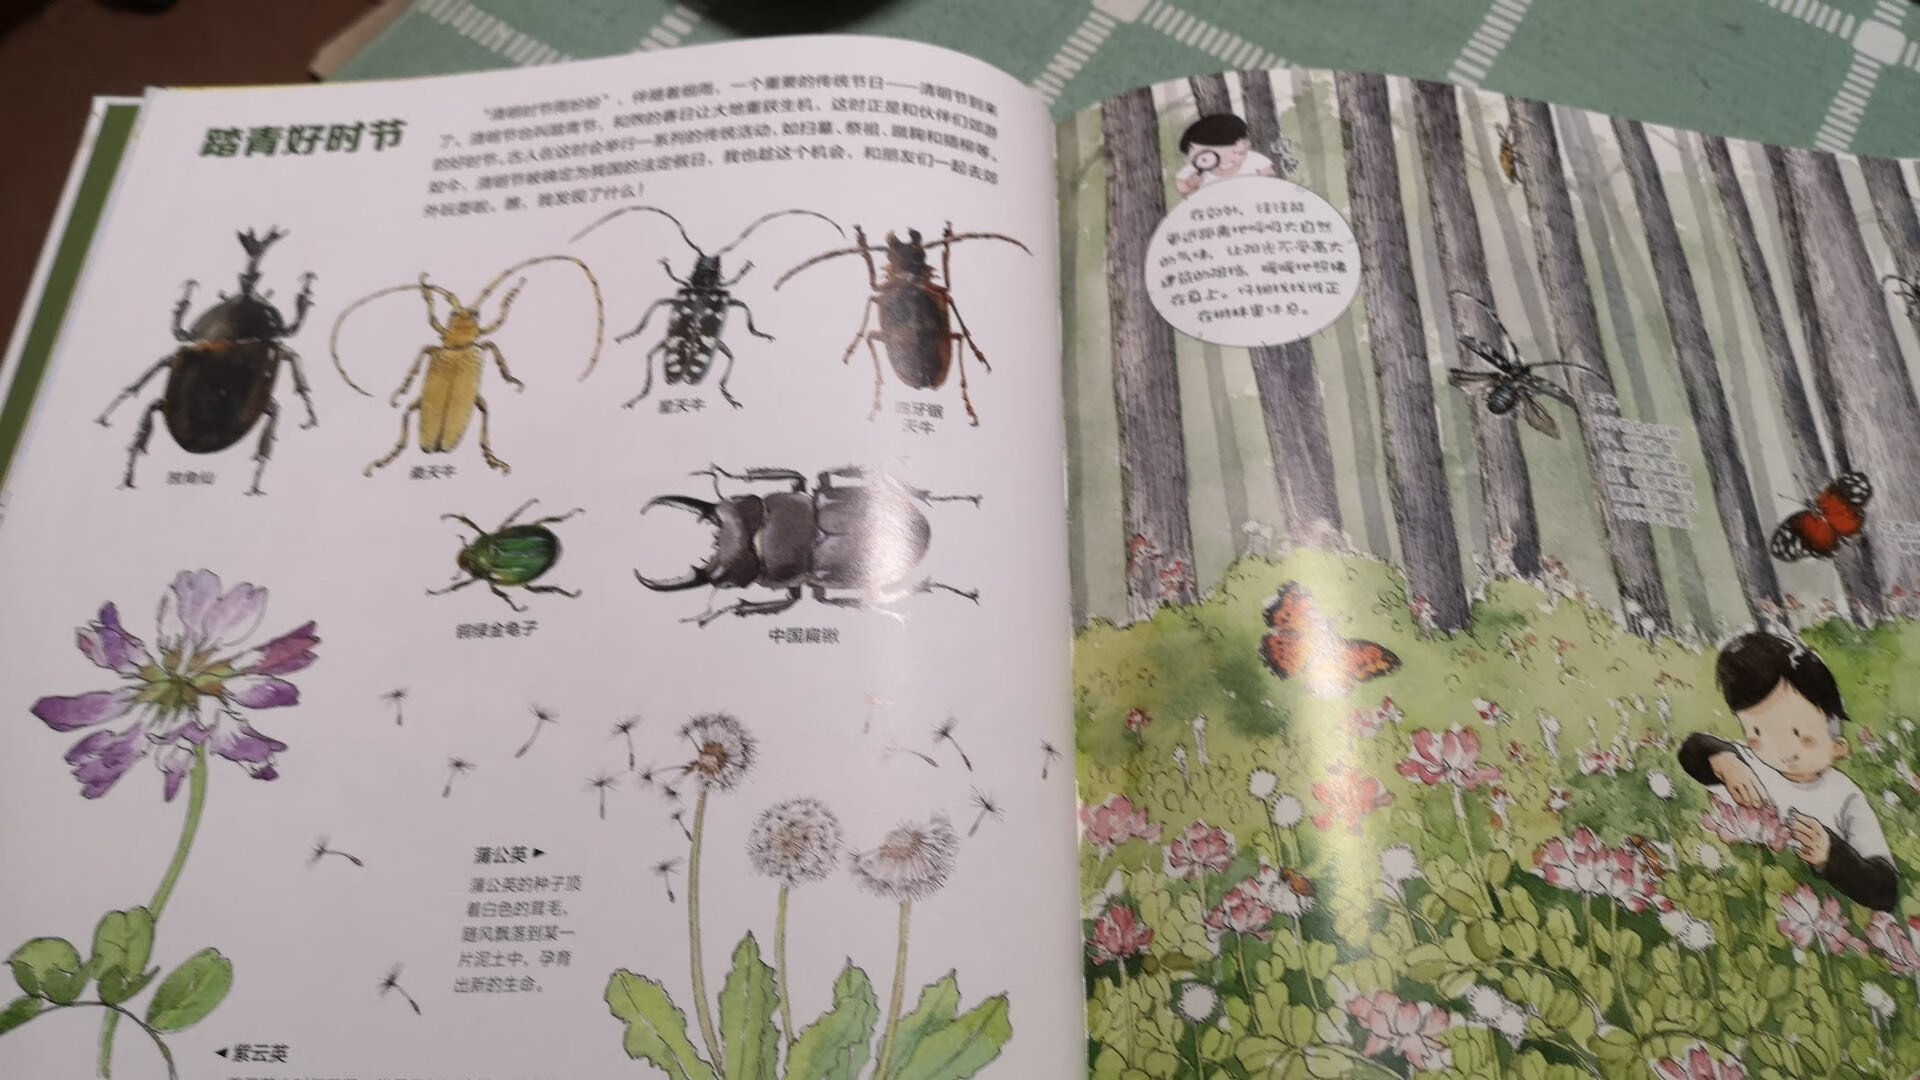 物流很快，隔天就到。这本书很适合中国小朋友阅读，按照春夏秋冬不同节气为时间线，介绍中国的动植物，身边的大自然。